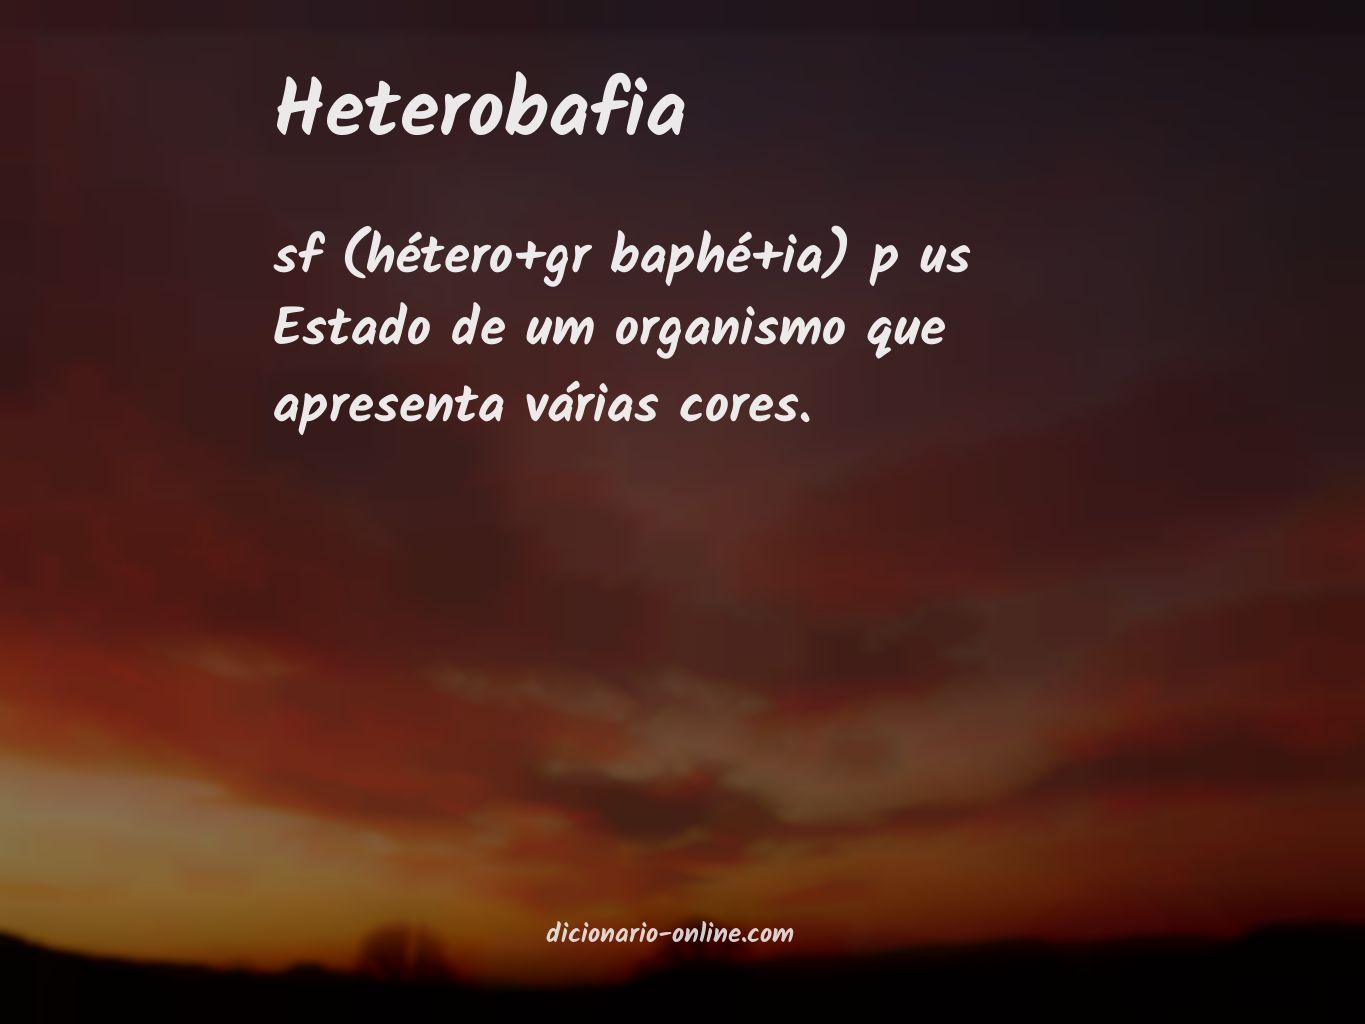 Significado de heterobafia